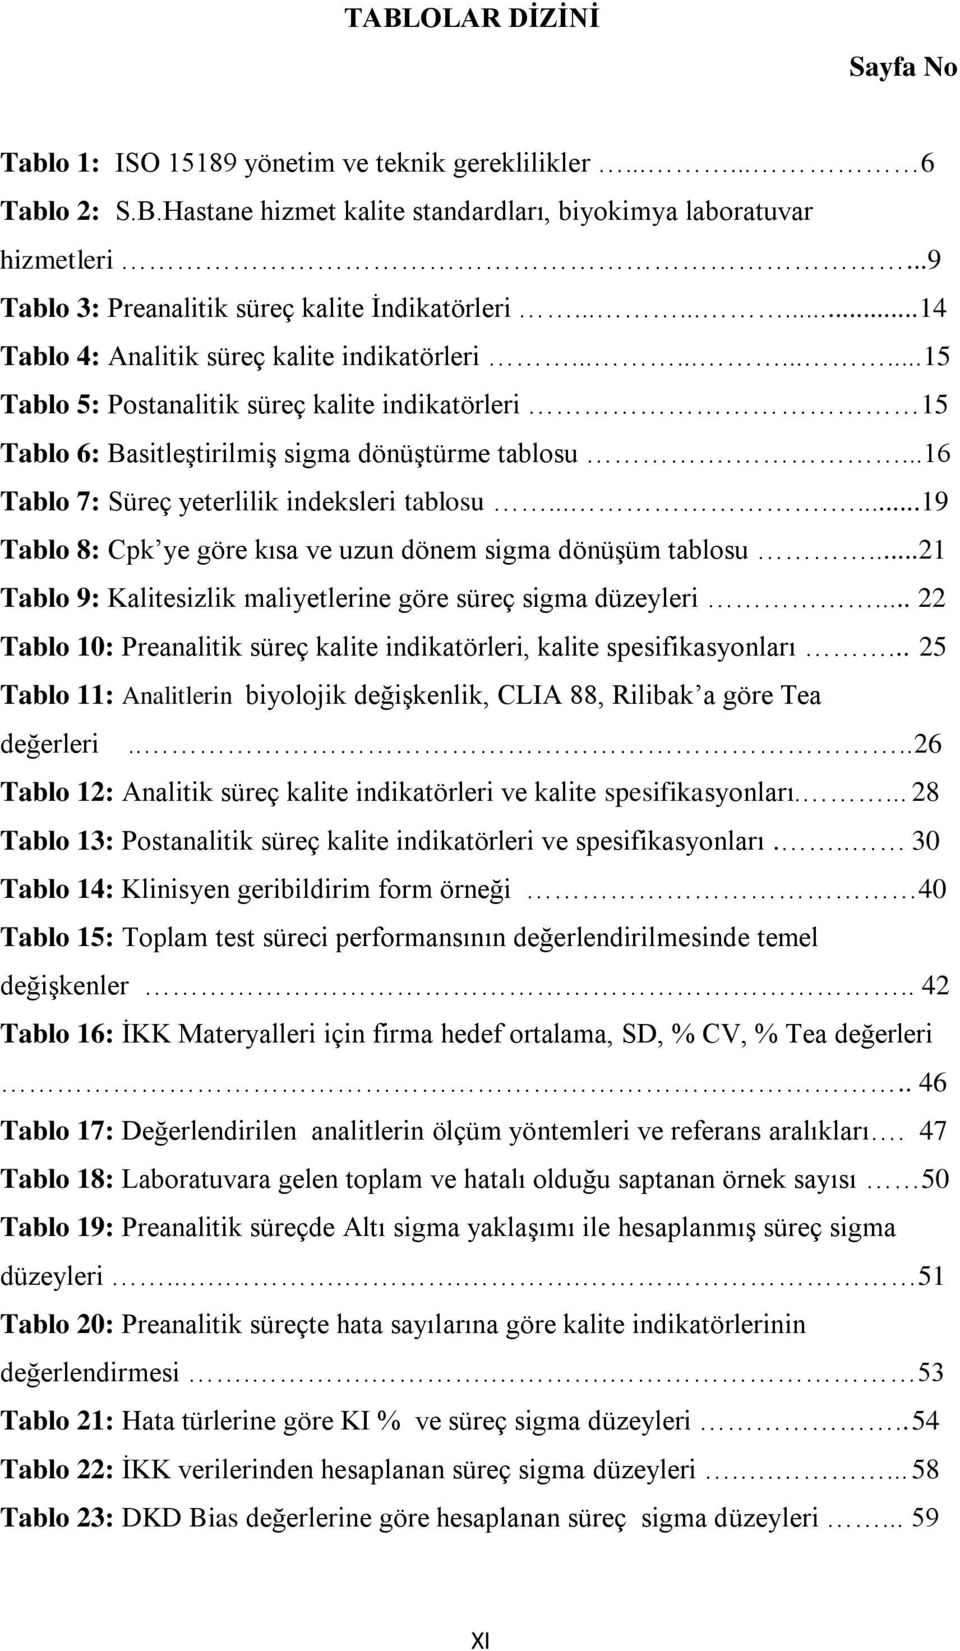 ...........15 15 Tablo 5: Postanalitik süreç kalite indikatörleri 15 15 Tablo 6: Basitleştirilmiş sigma dönüştürme tablosu....16 16 Tablo 7: Süreç yeterlilik indeksleri tablosu.